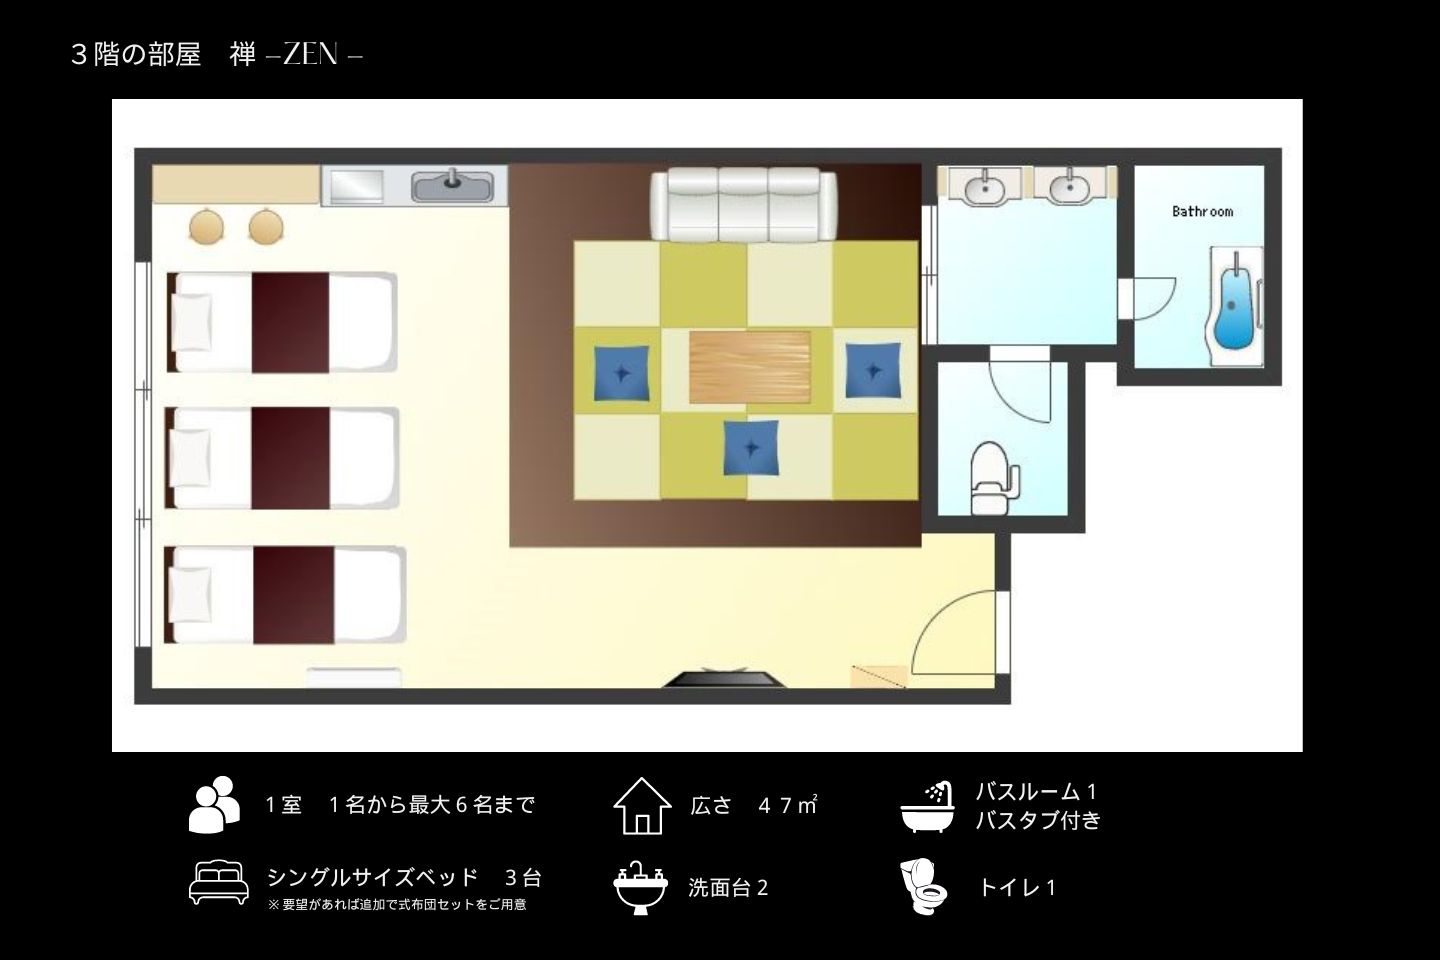 ３階【禅-ZEN-】シングルベッドが３台と大きな畳間のあるグループやファミリーにおすすめの部屋